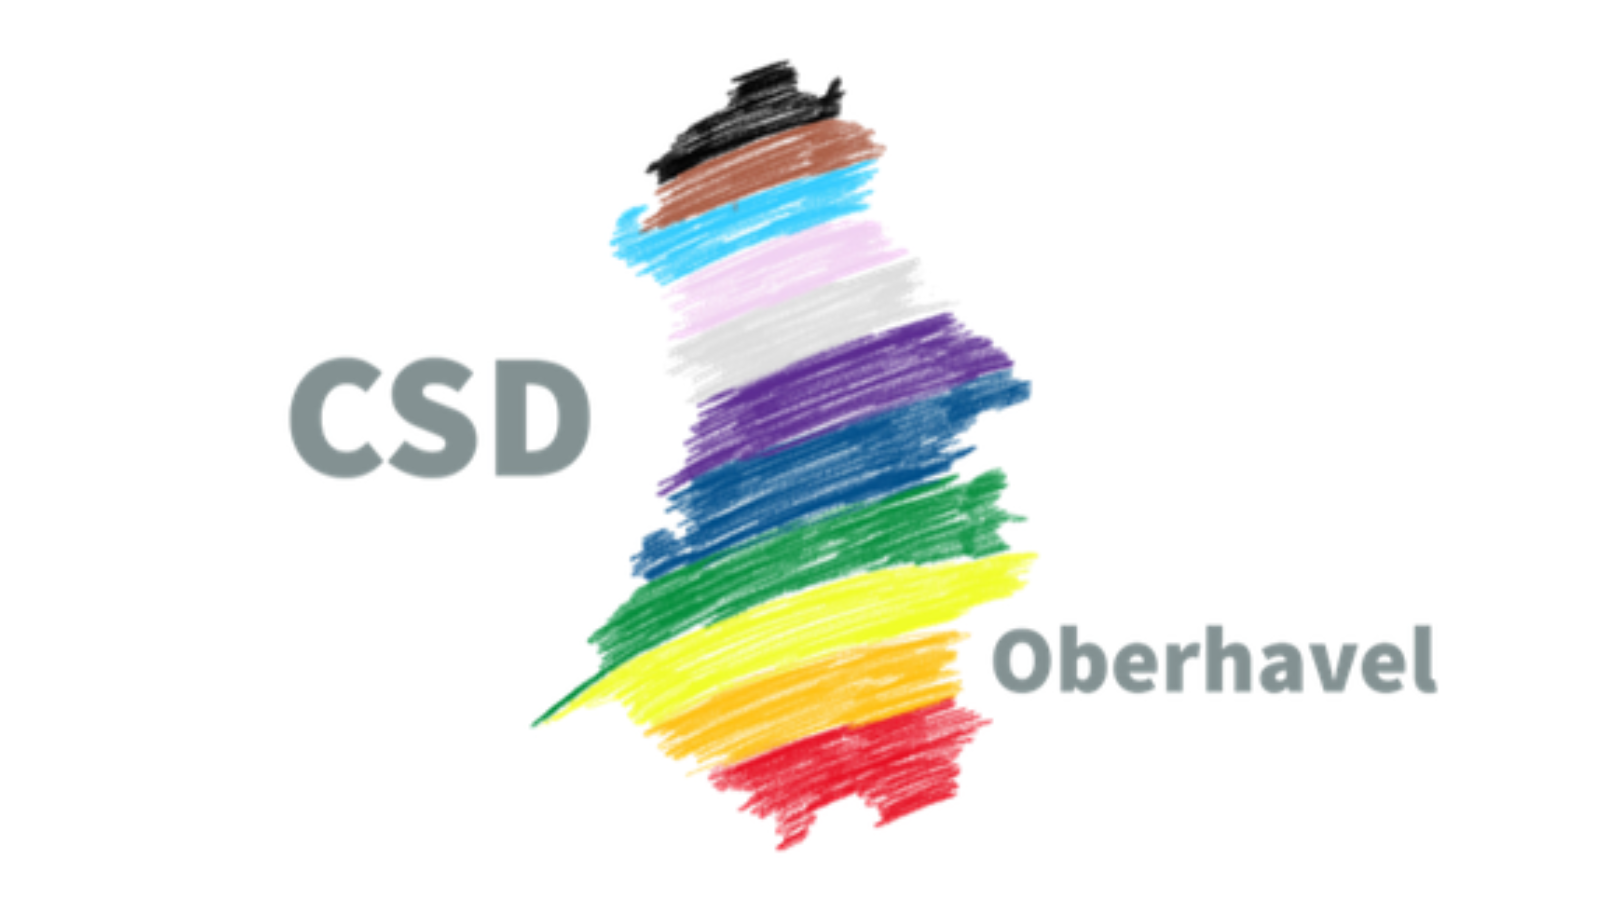 Mitte: Kartenausschnitt des Landkreises Oberhavel, ausgemalt in den Farben Schwarz, Braun, Hellblau, Rosa, Grau, Lila, Dunkelblau, Grün, Gelb, Orange und Rot. Links steht CSD, rechts Oberhavel.